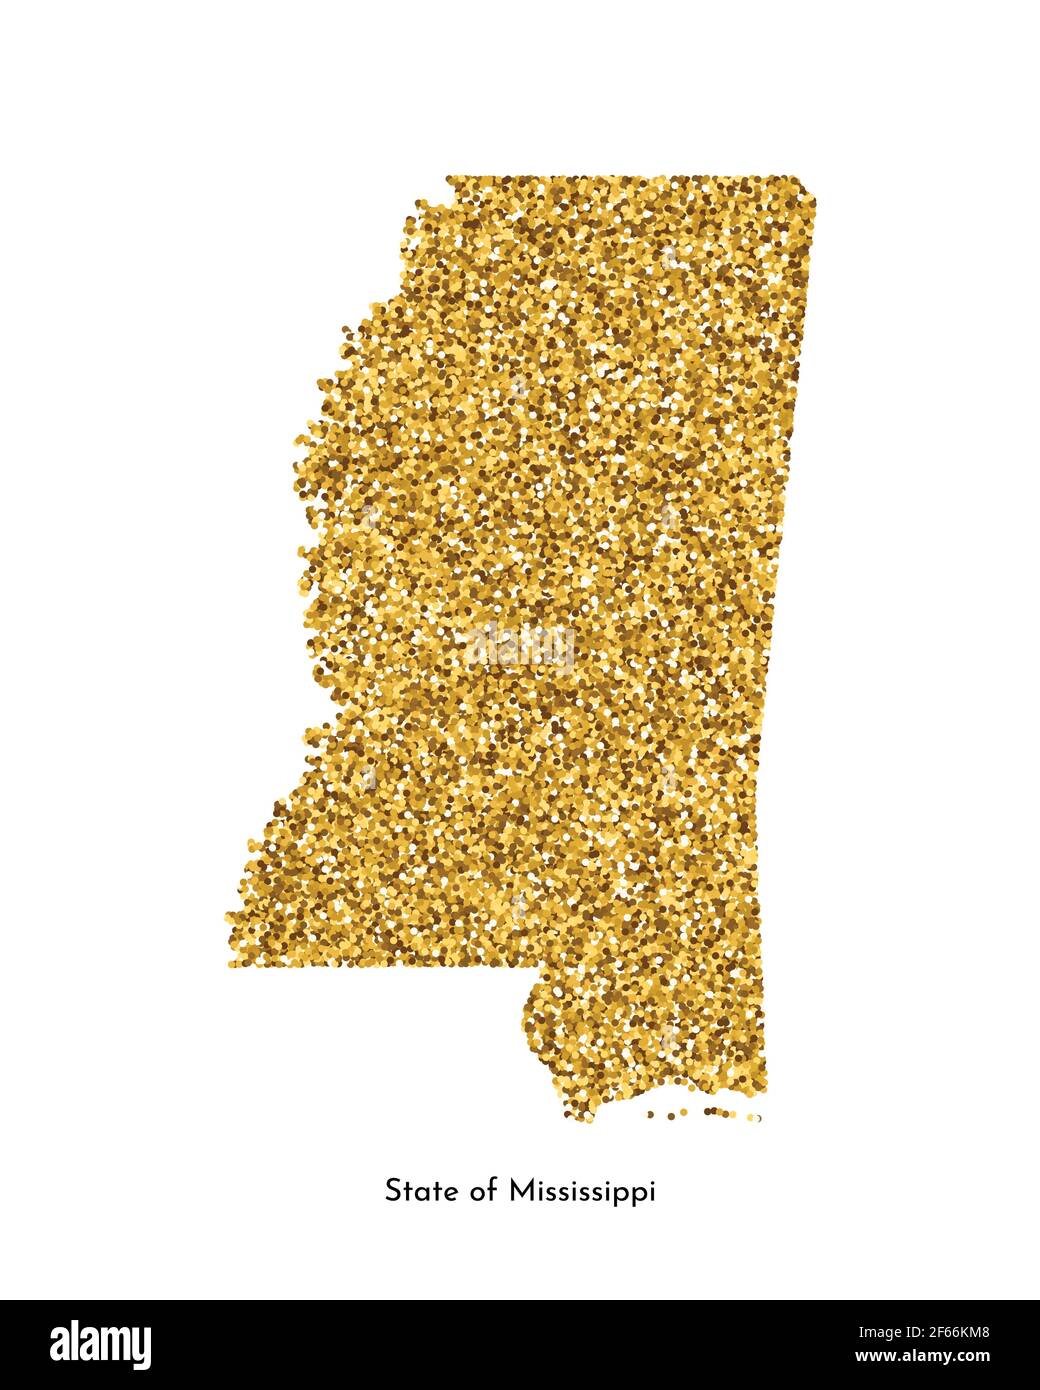 Illustrazione vettoriale isolata con mappa semplificata dello stato del Mississippi (USA). Luccicante texture dorata con glitter. Modello di decorazione. Illustrazione Vettoriale